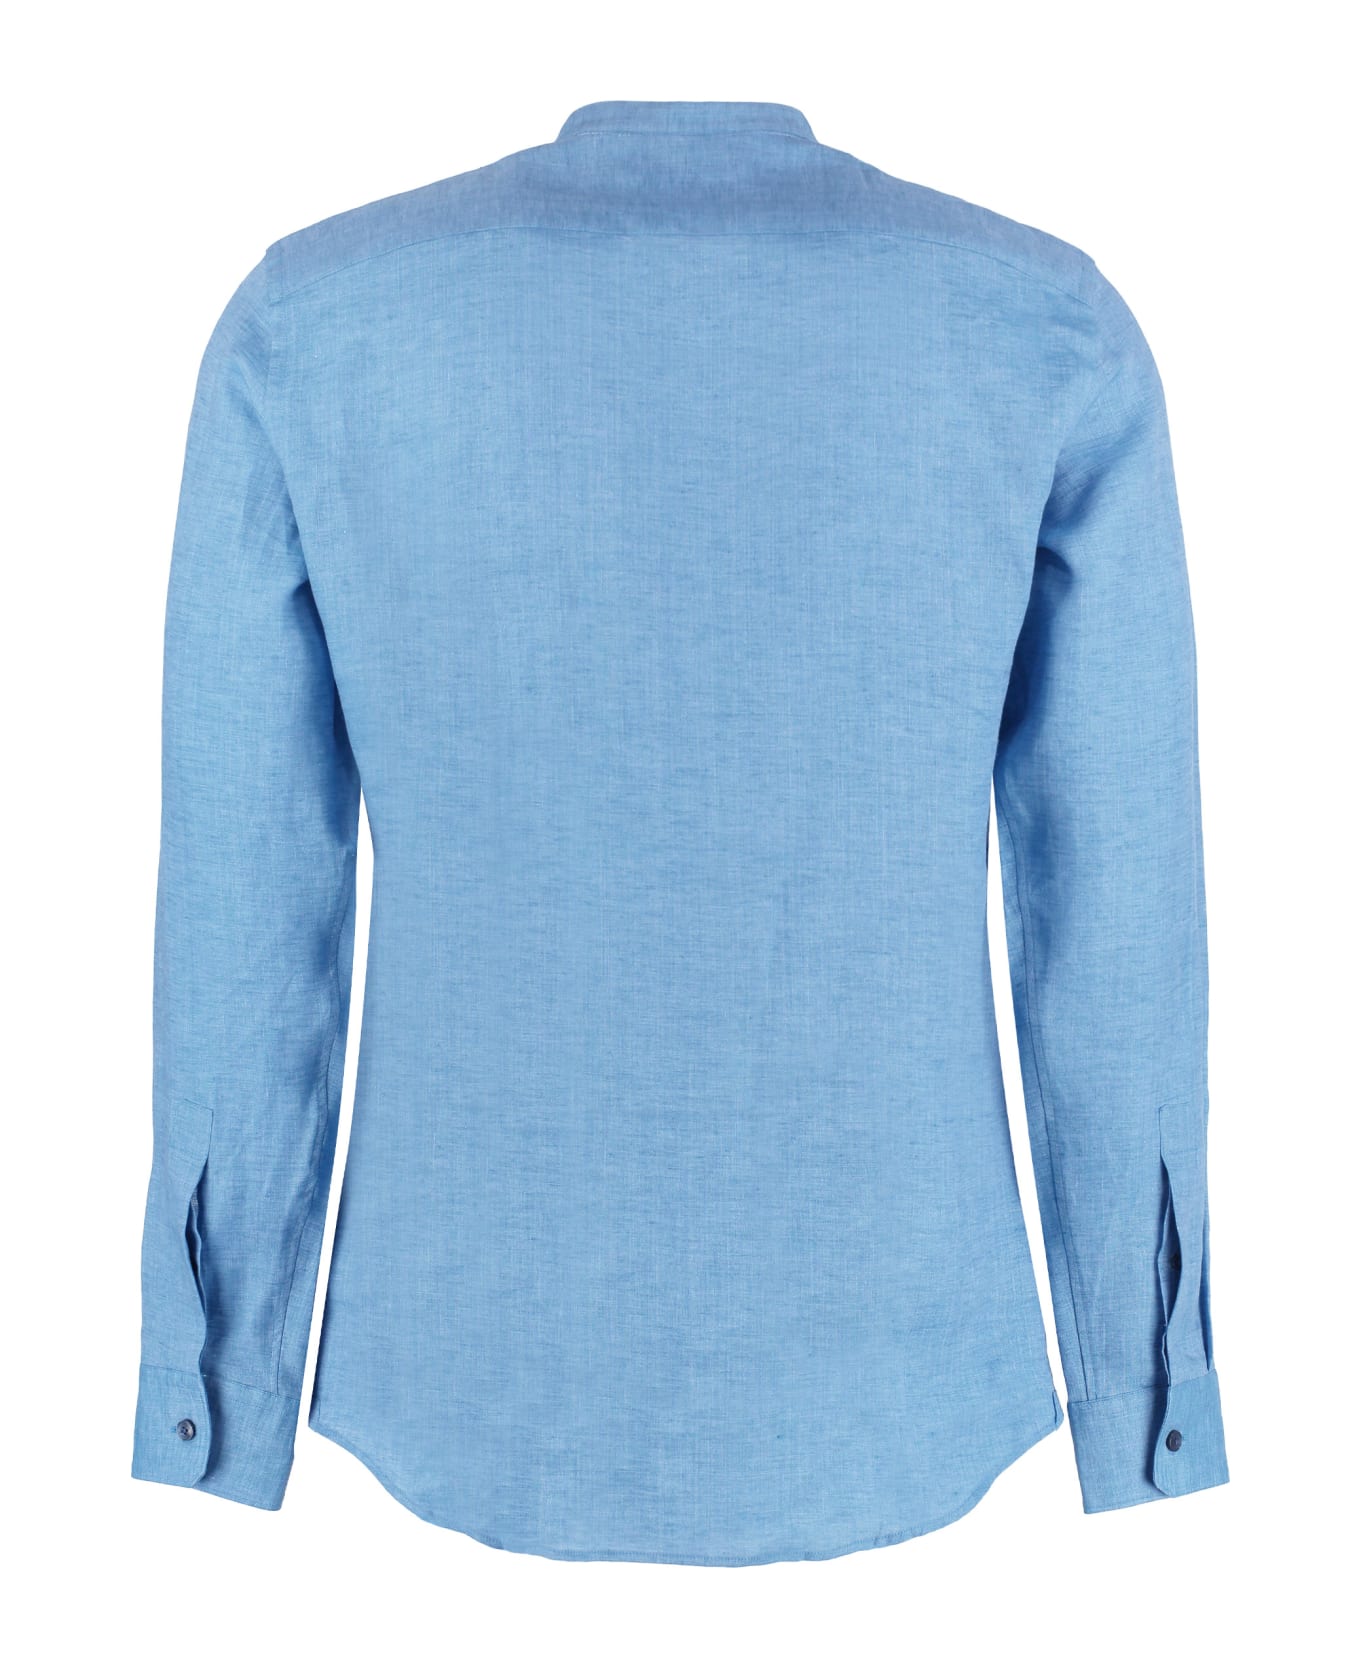 Z Zegna Linen Shirt - Light Blue シャツ